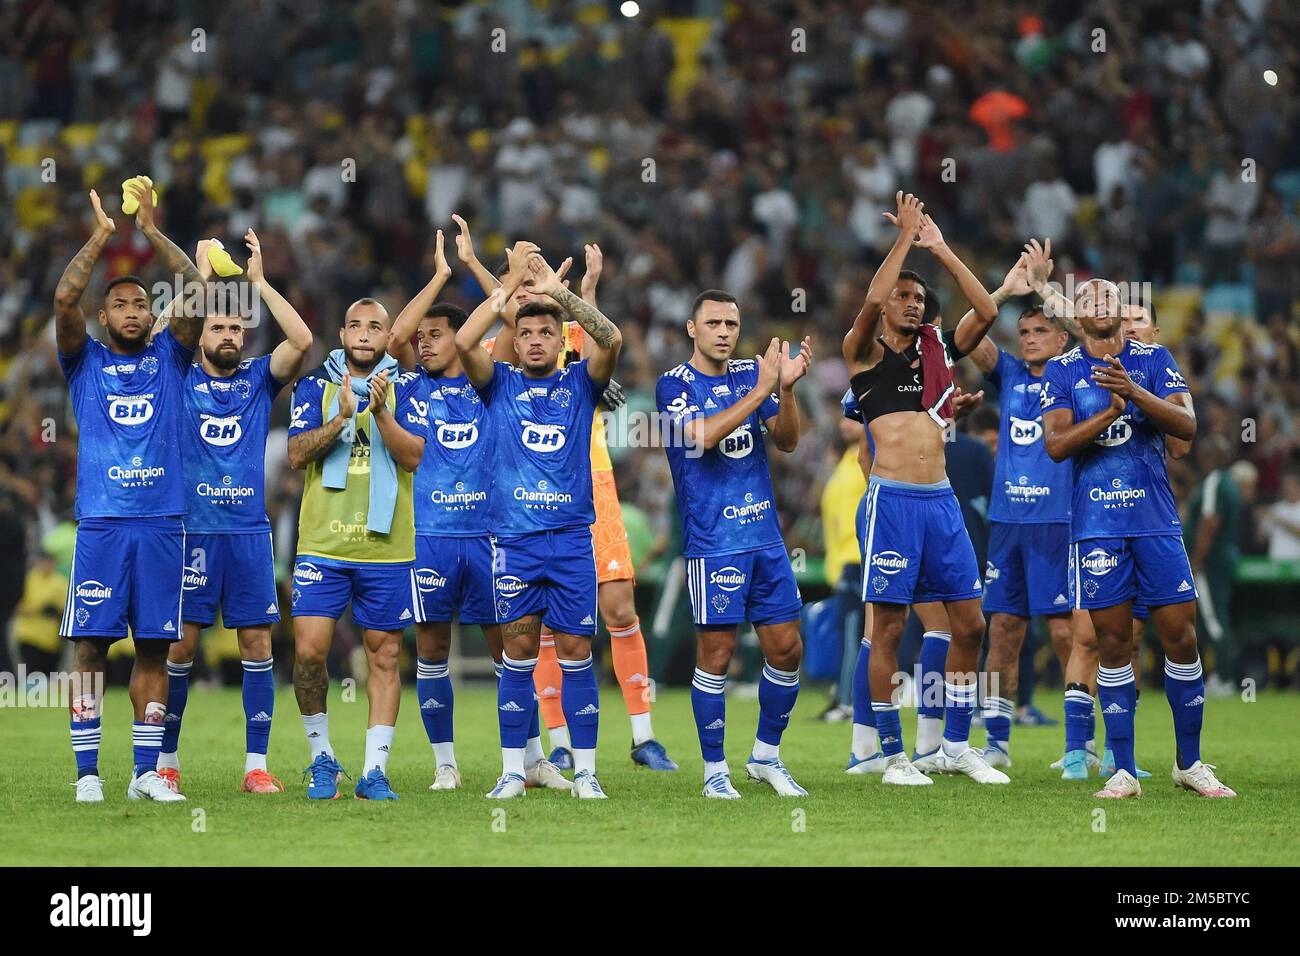 Rio de Janeiro, Brésil, 23 juin 2022. Les joueurs de football de l'équipe Cruzeiro, lors du match fluminense contre Cruzeiro pour la coupe du Brésil, à Mara Banque D'Images